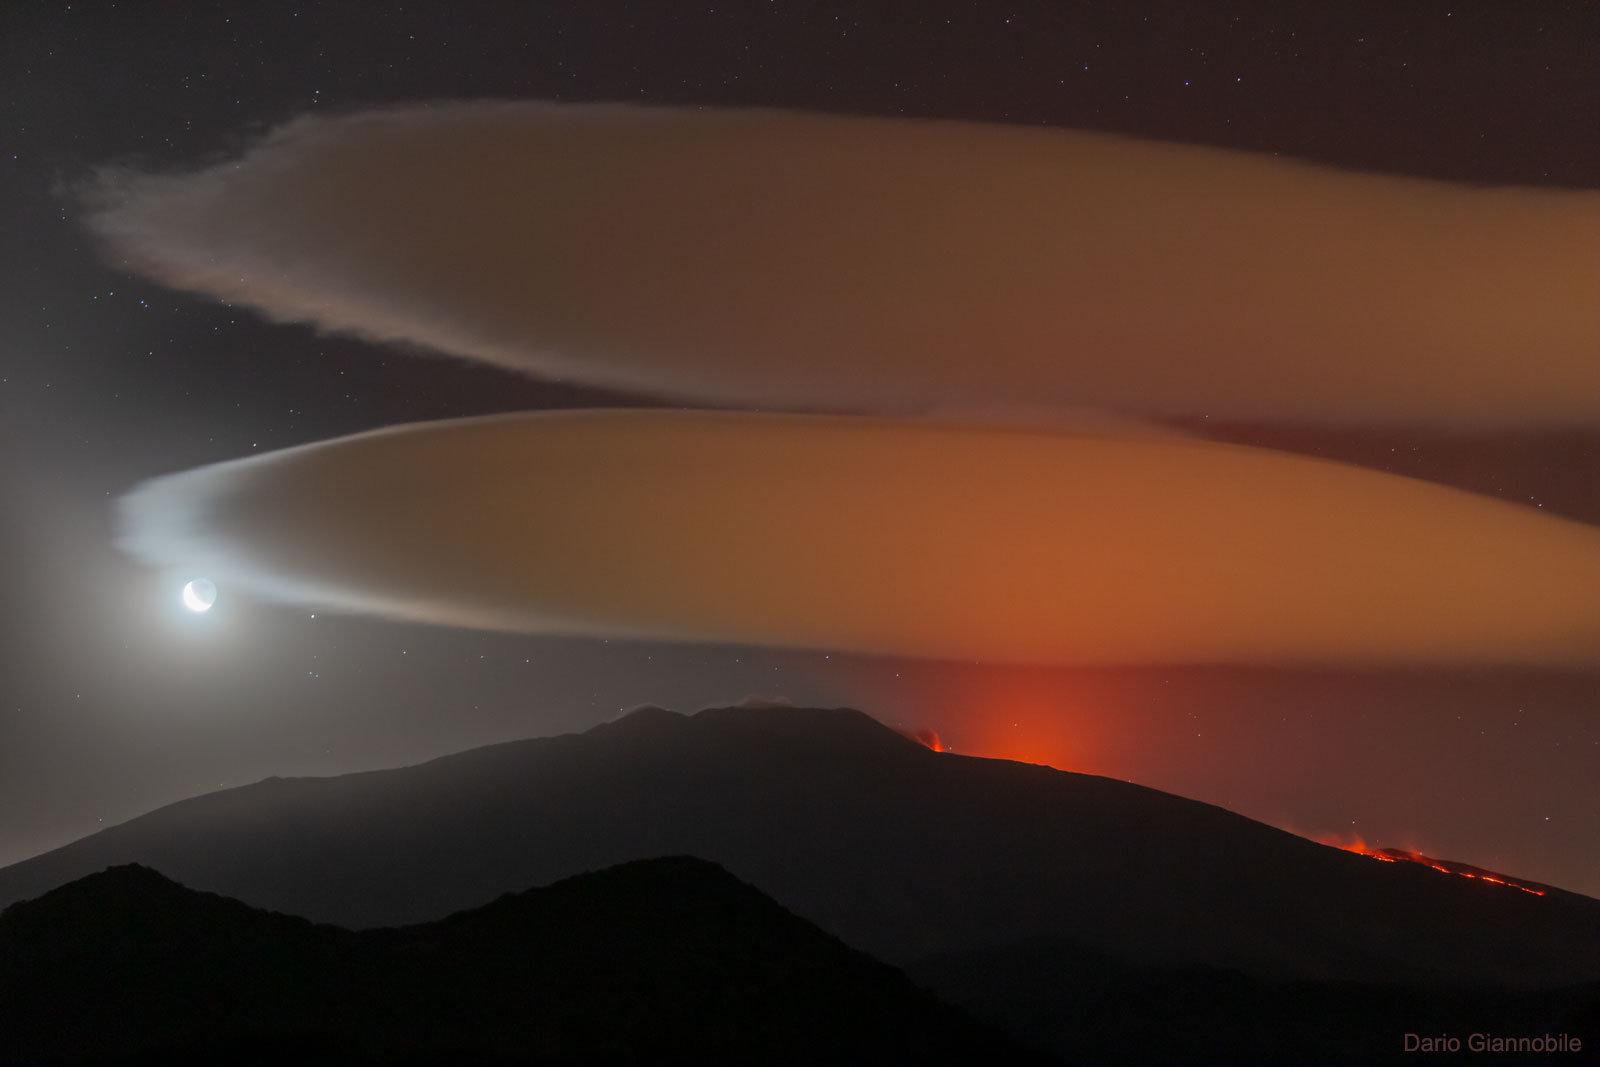  埃特納火山上空的莢狀雲 <br />影像提供與版權: Dario Giannobile <br />說明: 這座火山的上空發生了什麼事？ 雖然埃特納火山正在爆發，但它上空的雲和此次的爆發無關。 它們是潮濕空氣受迫沿著山峰或火山抬升，所形成的莢狀雲。 這幅超現實的景觀，是在上個月當這位天文攝影者，前往義大利．西西里島的聯合國教科文組織 世界文化遺址埃特納火山，拍攝月亮和畢宿五近合時補捉到的。<br /> 